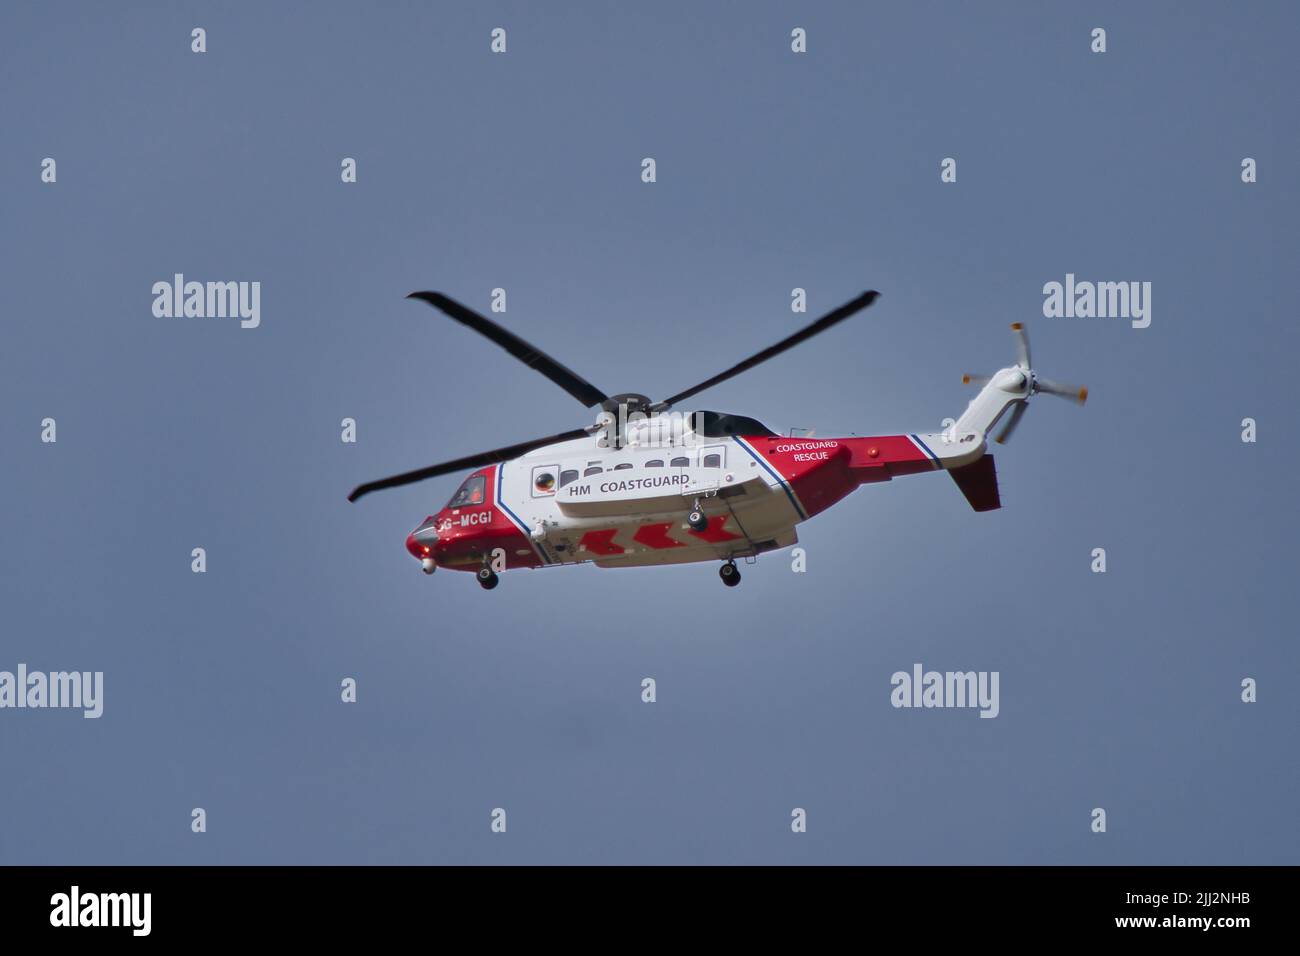 Un helicóptero Sikorsky S-92A, rojo y blanco, del guardacostas HM, en vuelo contra un cielo gris azul. Foto de stock